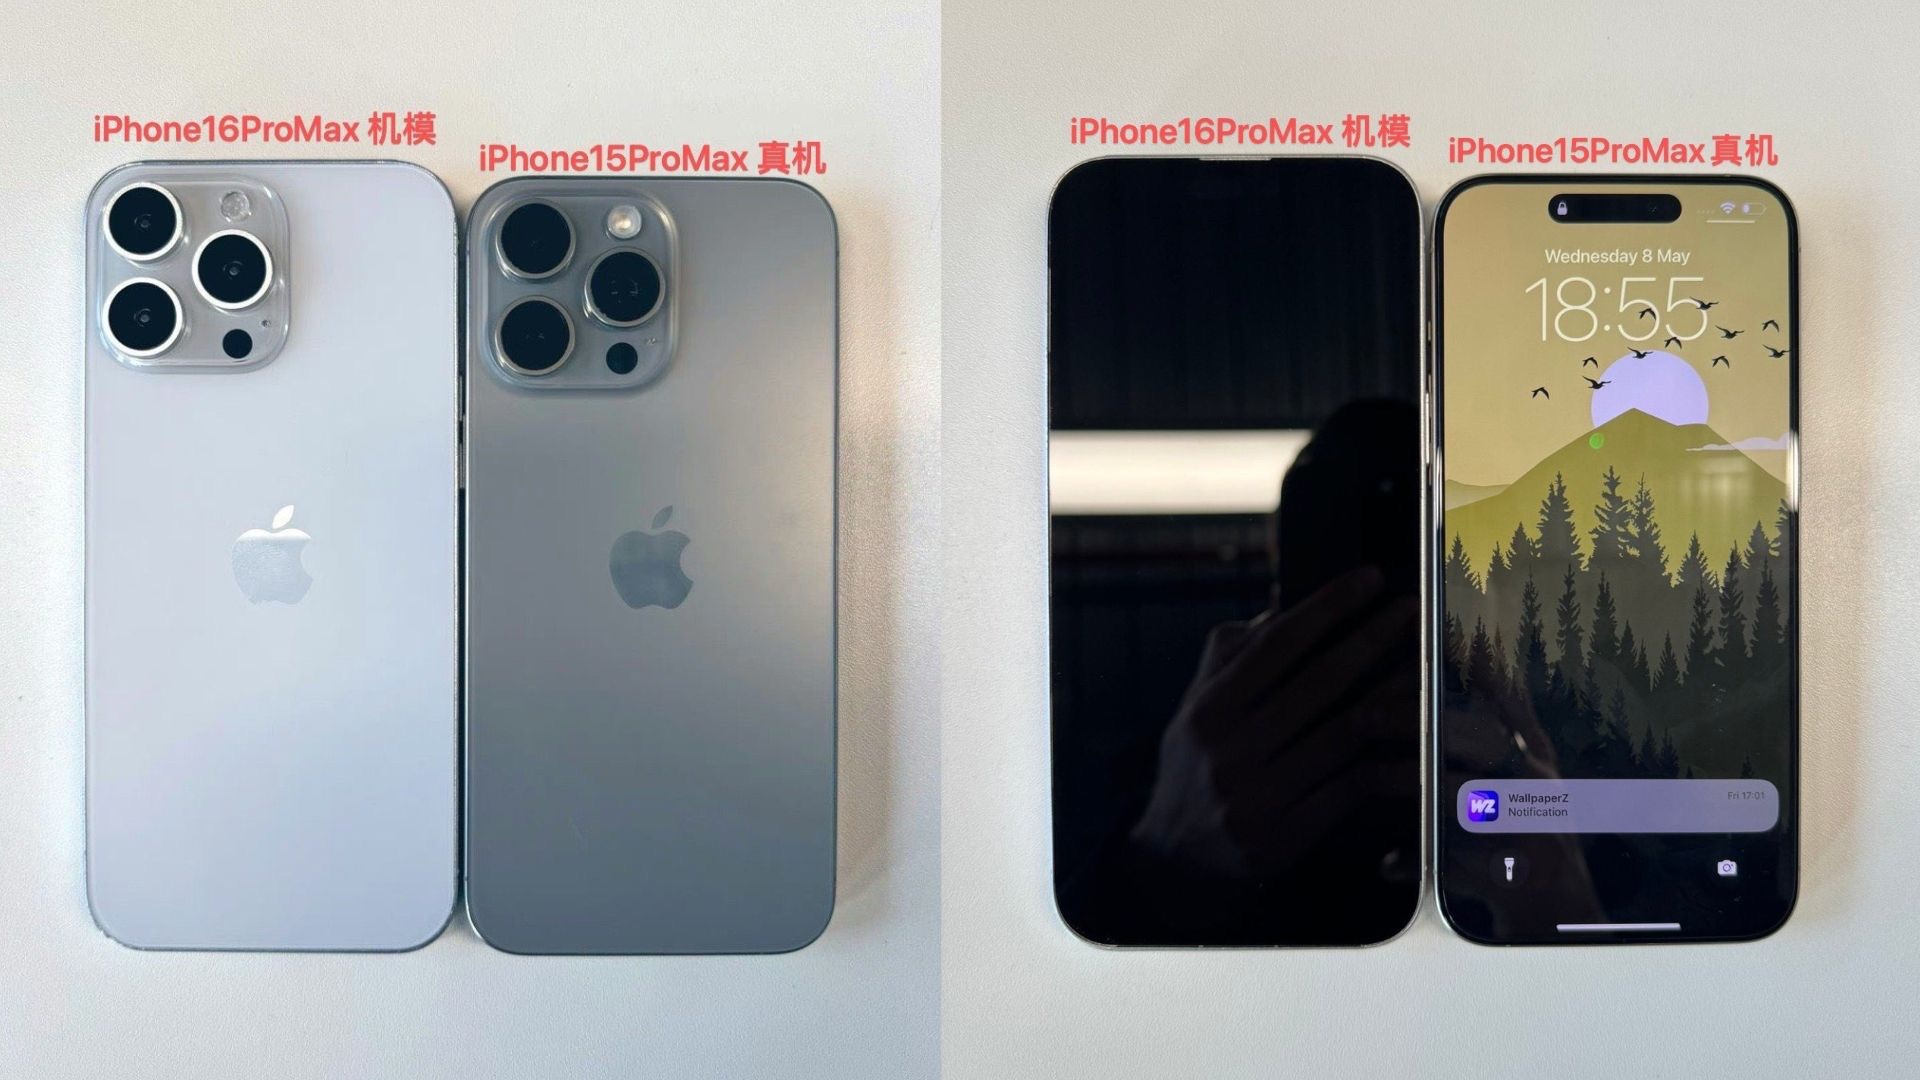 iPhone, 15 Pro Max versus iPhone 16 Pro Max​